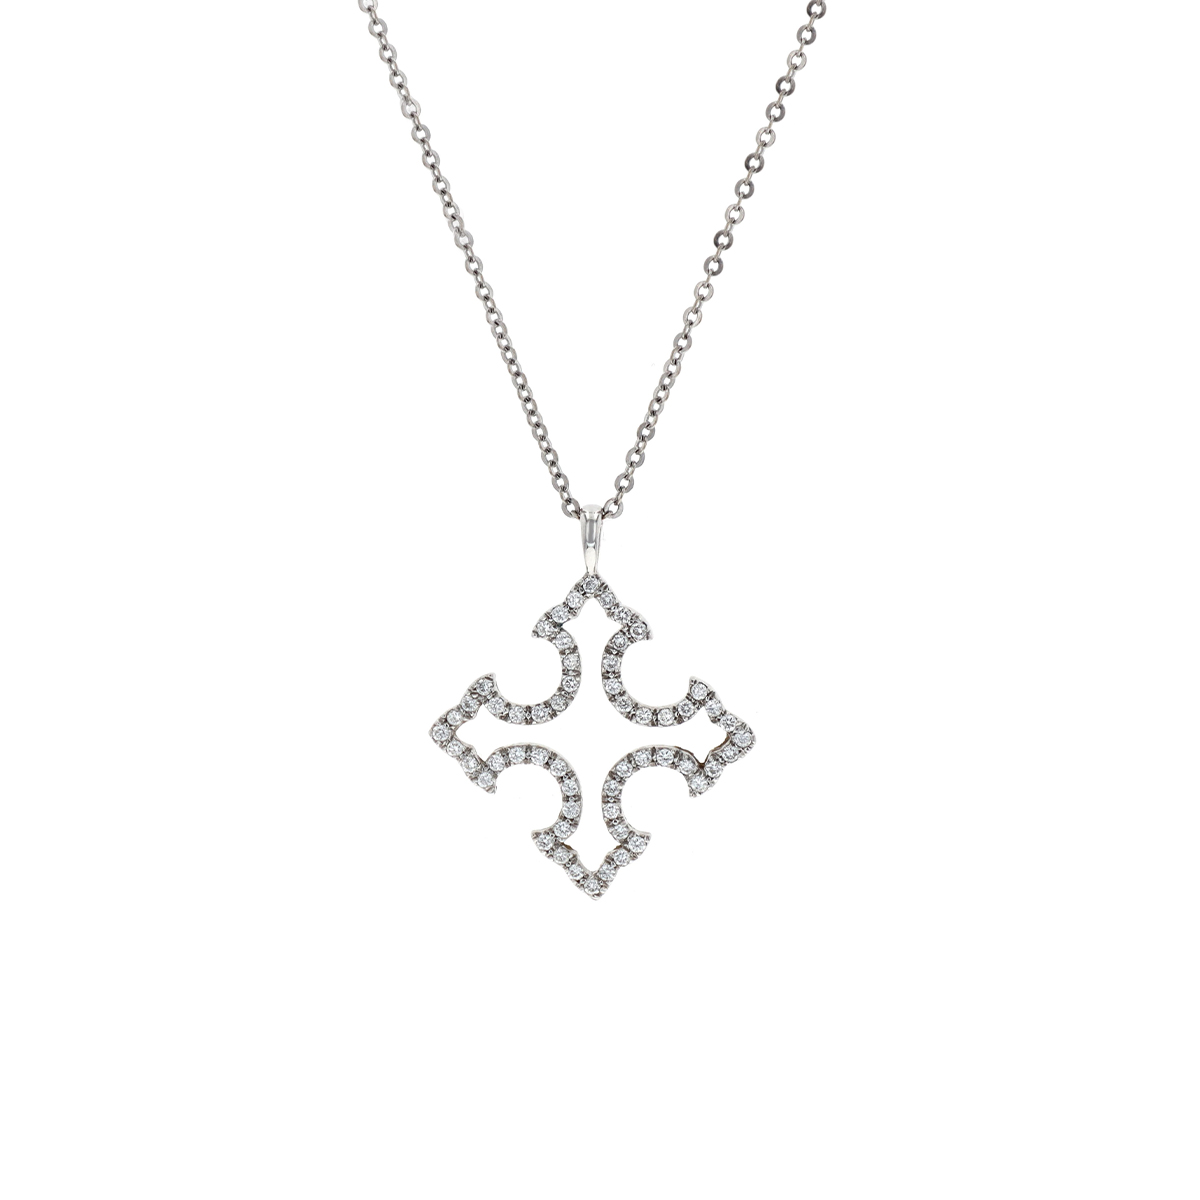 Estate 18K White Gold Verragio Diamond Pendant with Chain